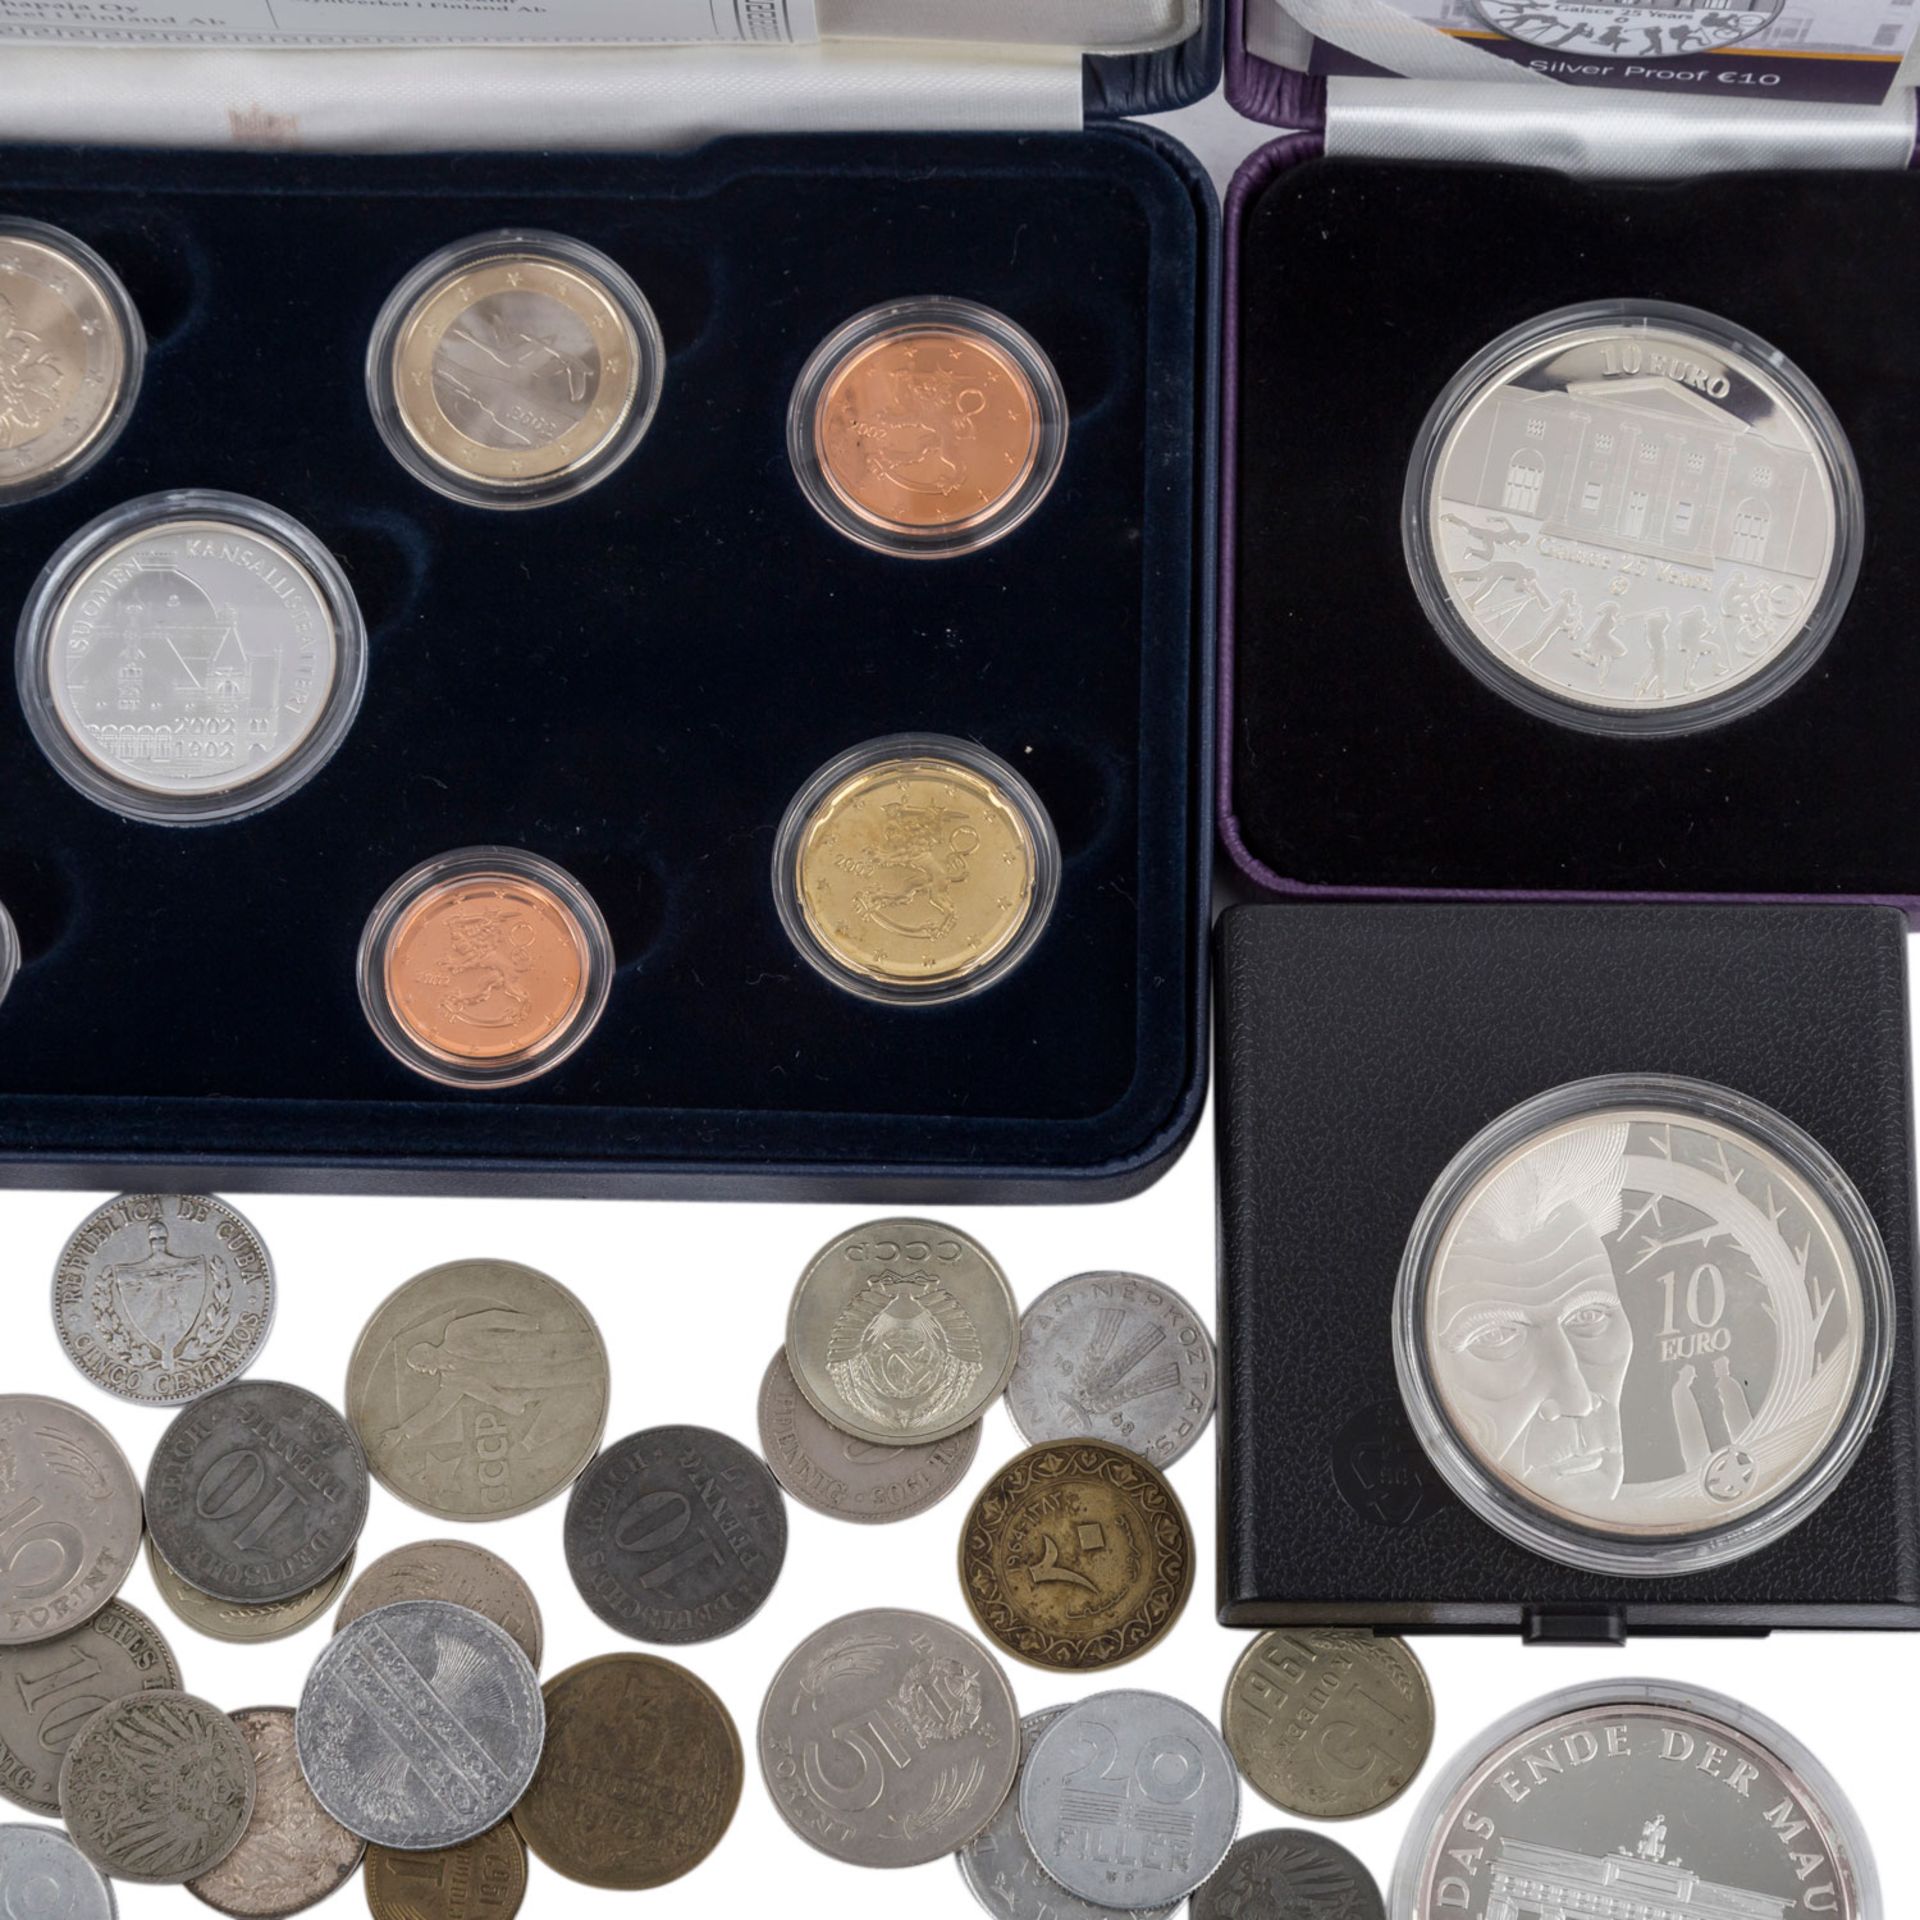 Restelot mit u.a. Prestige Kursmünzensatz Finnland 2002mit Medaille und 1 Cent bis 2 Euro Münzen, - Bild 3 aus 4